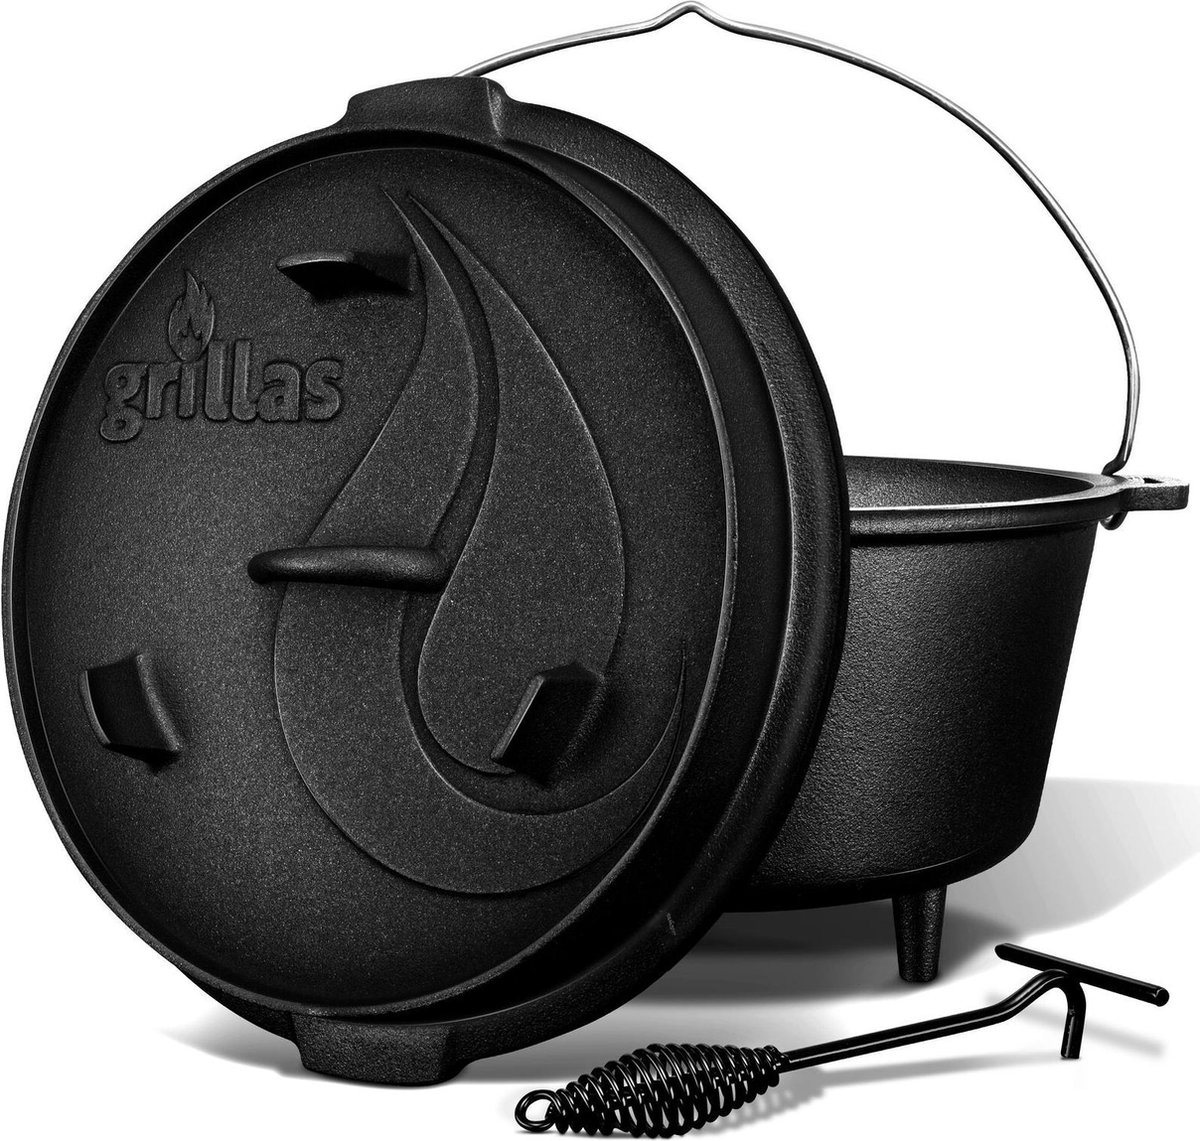 Grillas- Dutch Oven, 7.3L, BBQ pan, gietijzer, met pootjes